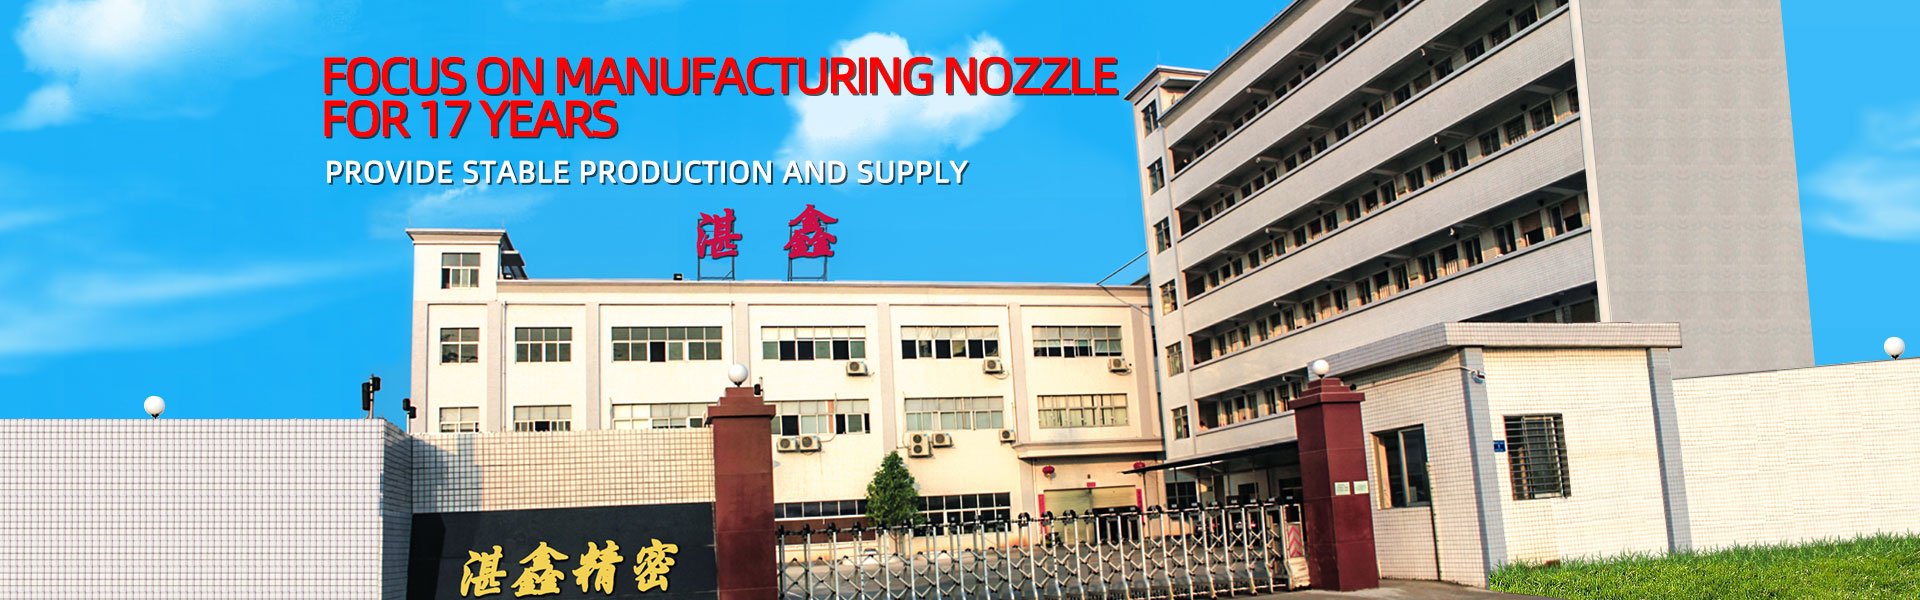 معالجة المعادن، فوهة صناعية، بالقطع,Dongguan Zhanxin Precision Technology Co., Ltd.